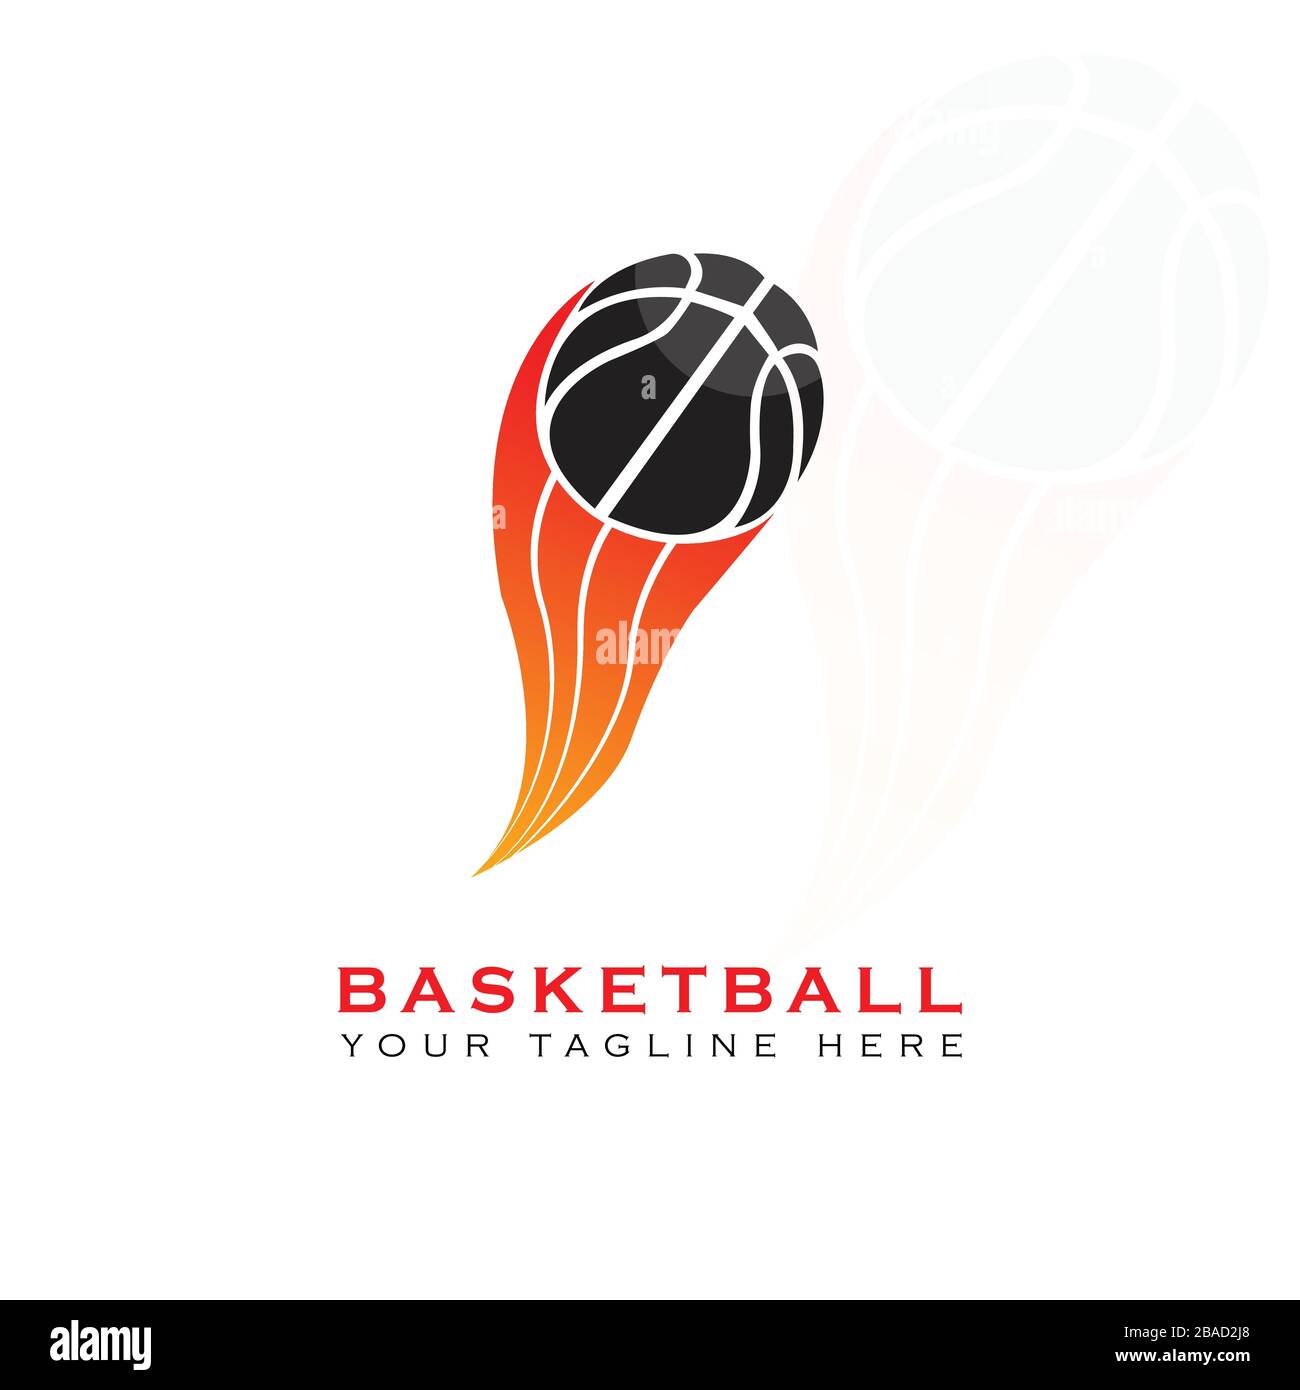 Ce logo a une image d'un basket-ball placés dans un panier de basket-ball. Ce logo est bien utilisé comme logo de l'équipe de basket-ball dans le domaine sportif. Mais il Illustration de Vecteur